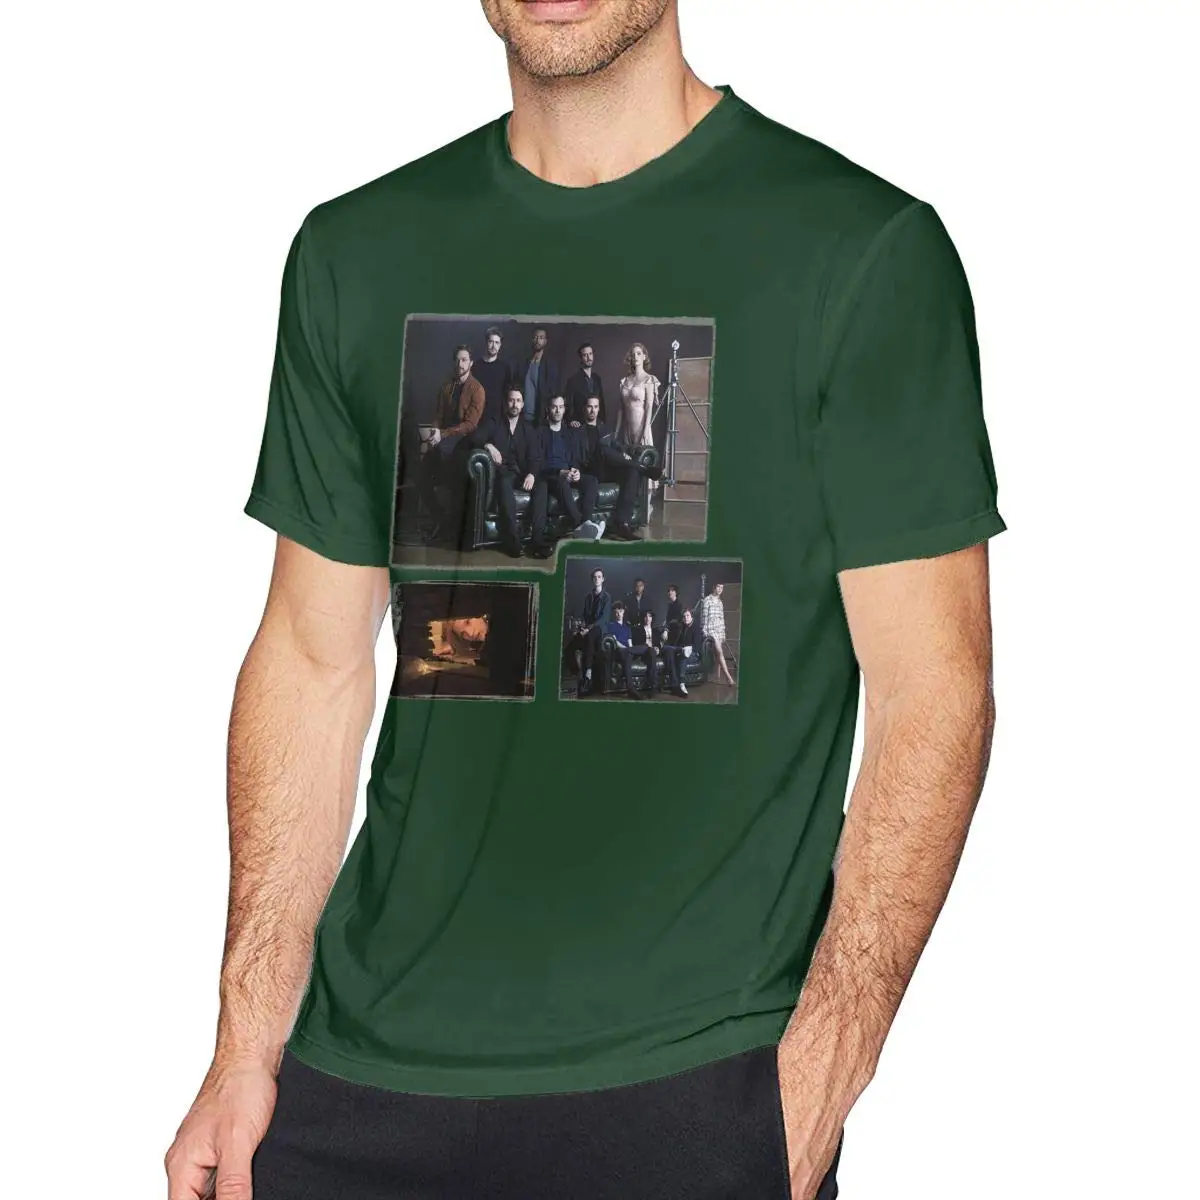 CharmKAT Chapter Two It футболки Графический топ с короткими рукавами футболки для мужчин черные футболки с круглым вырезом топы